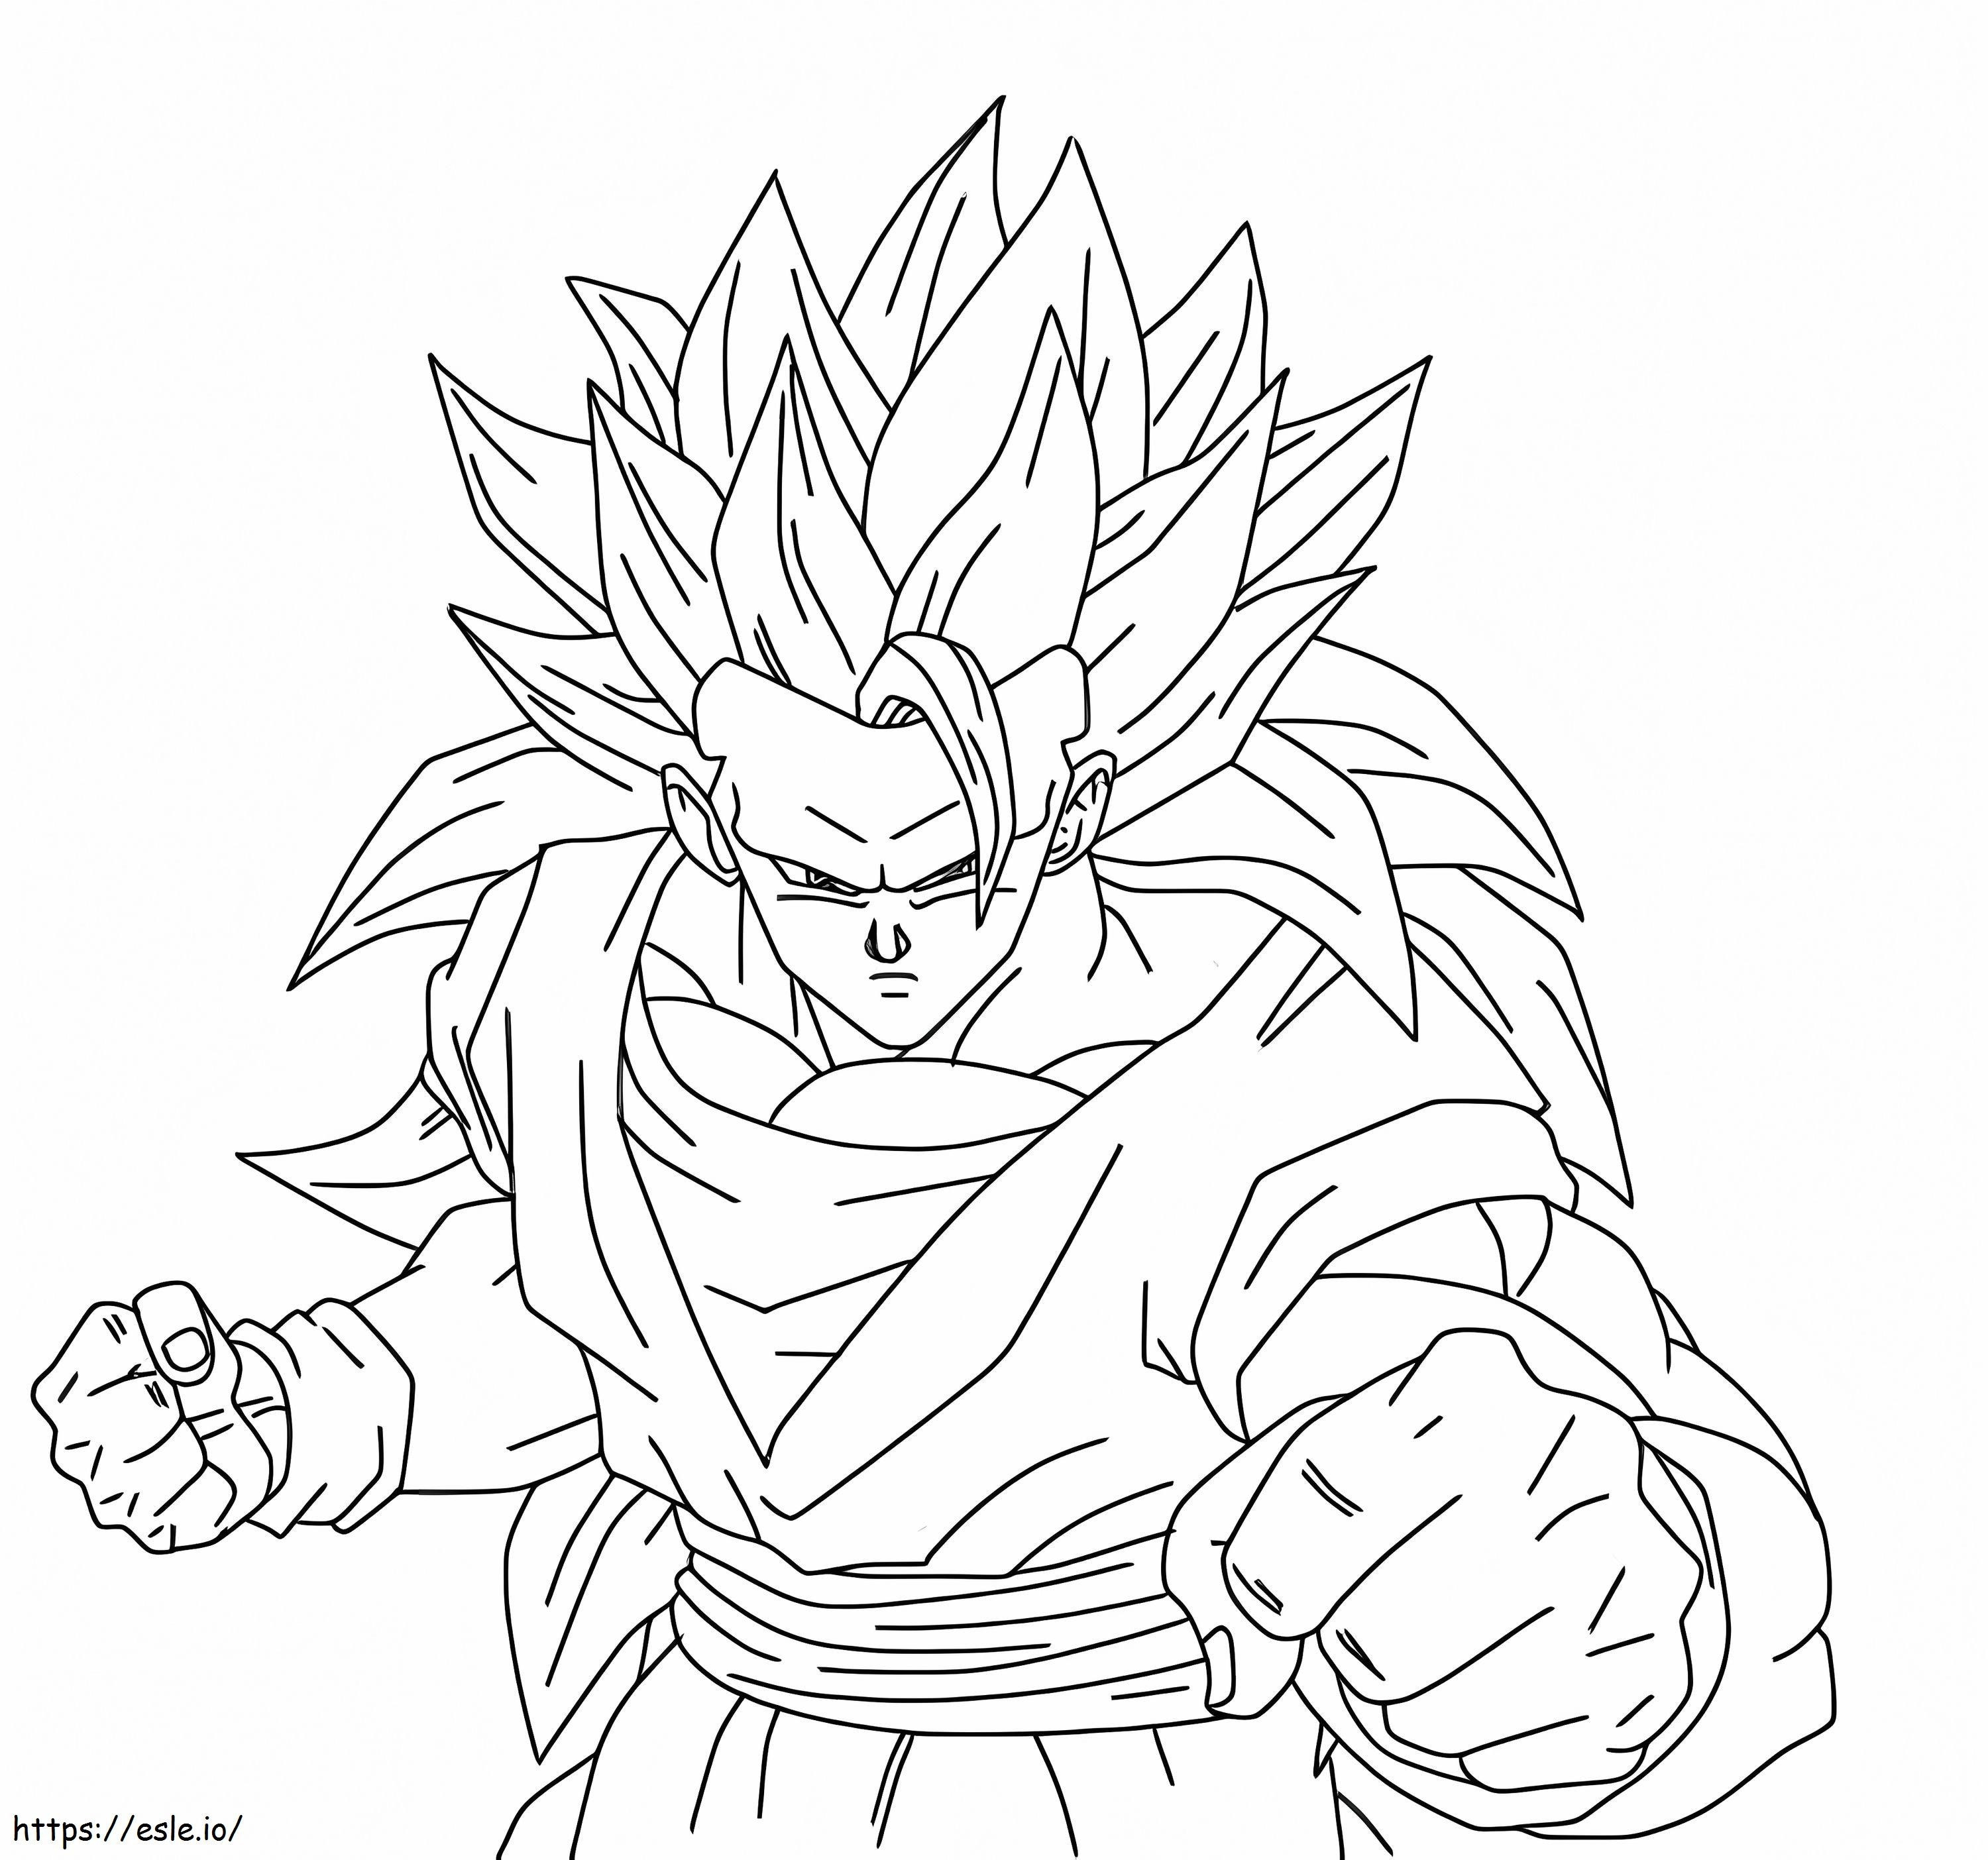 Son Gokun taistelu värityskuva